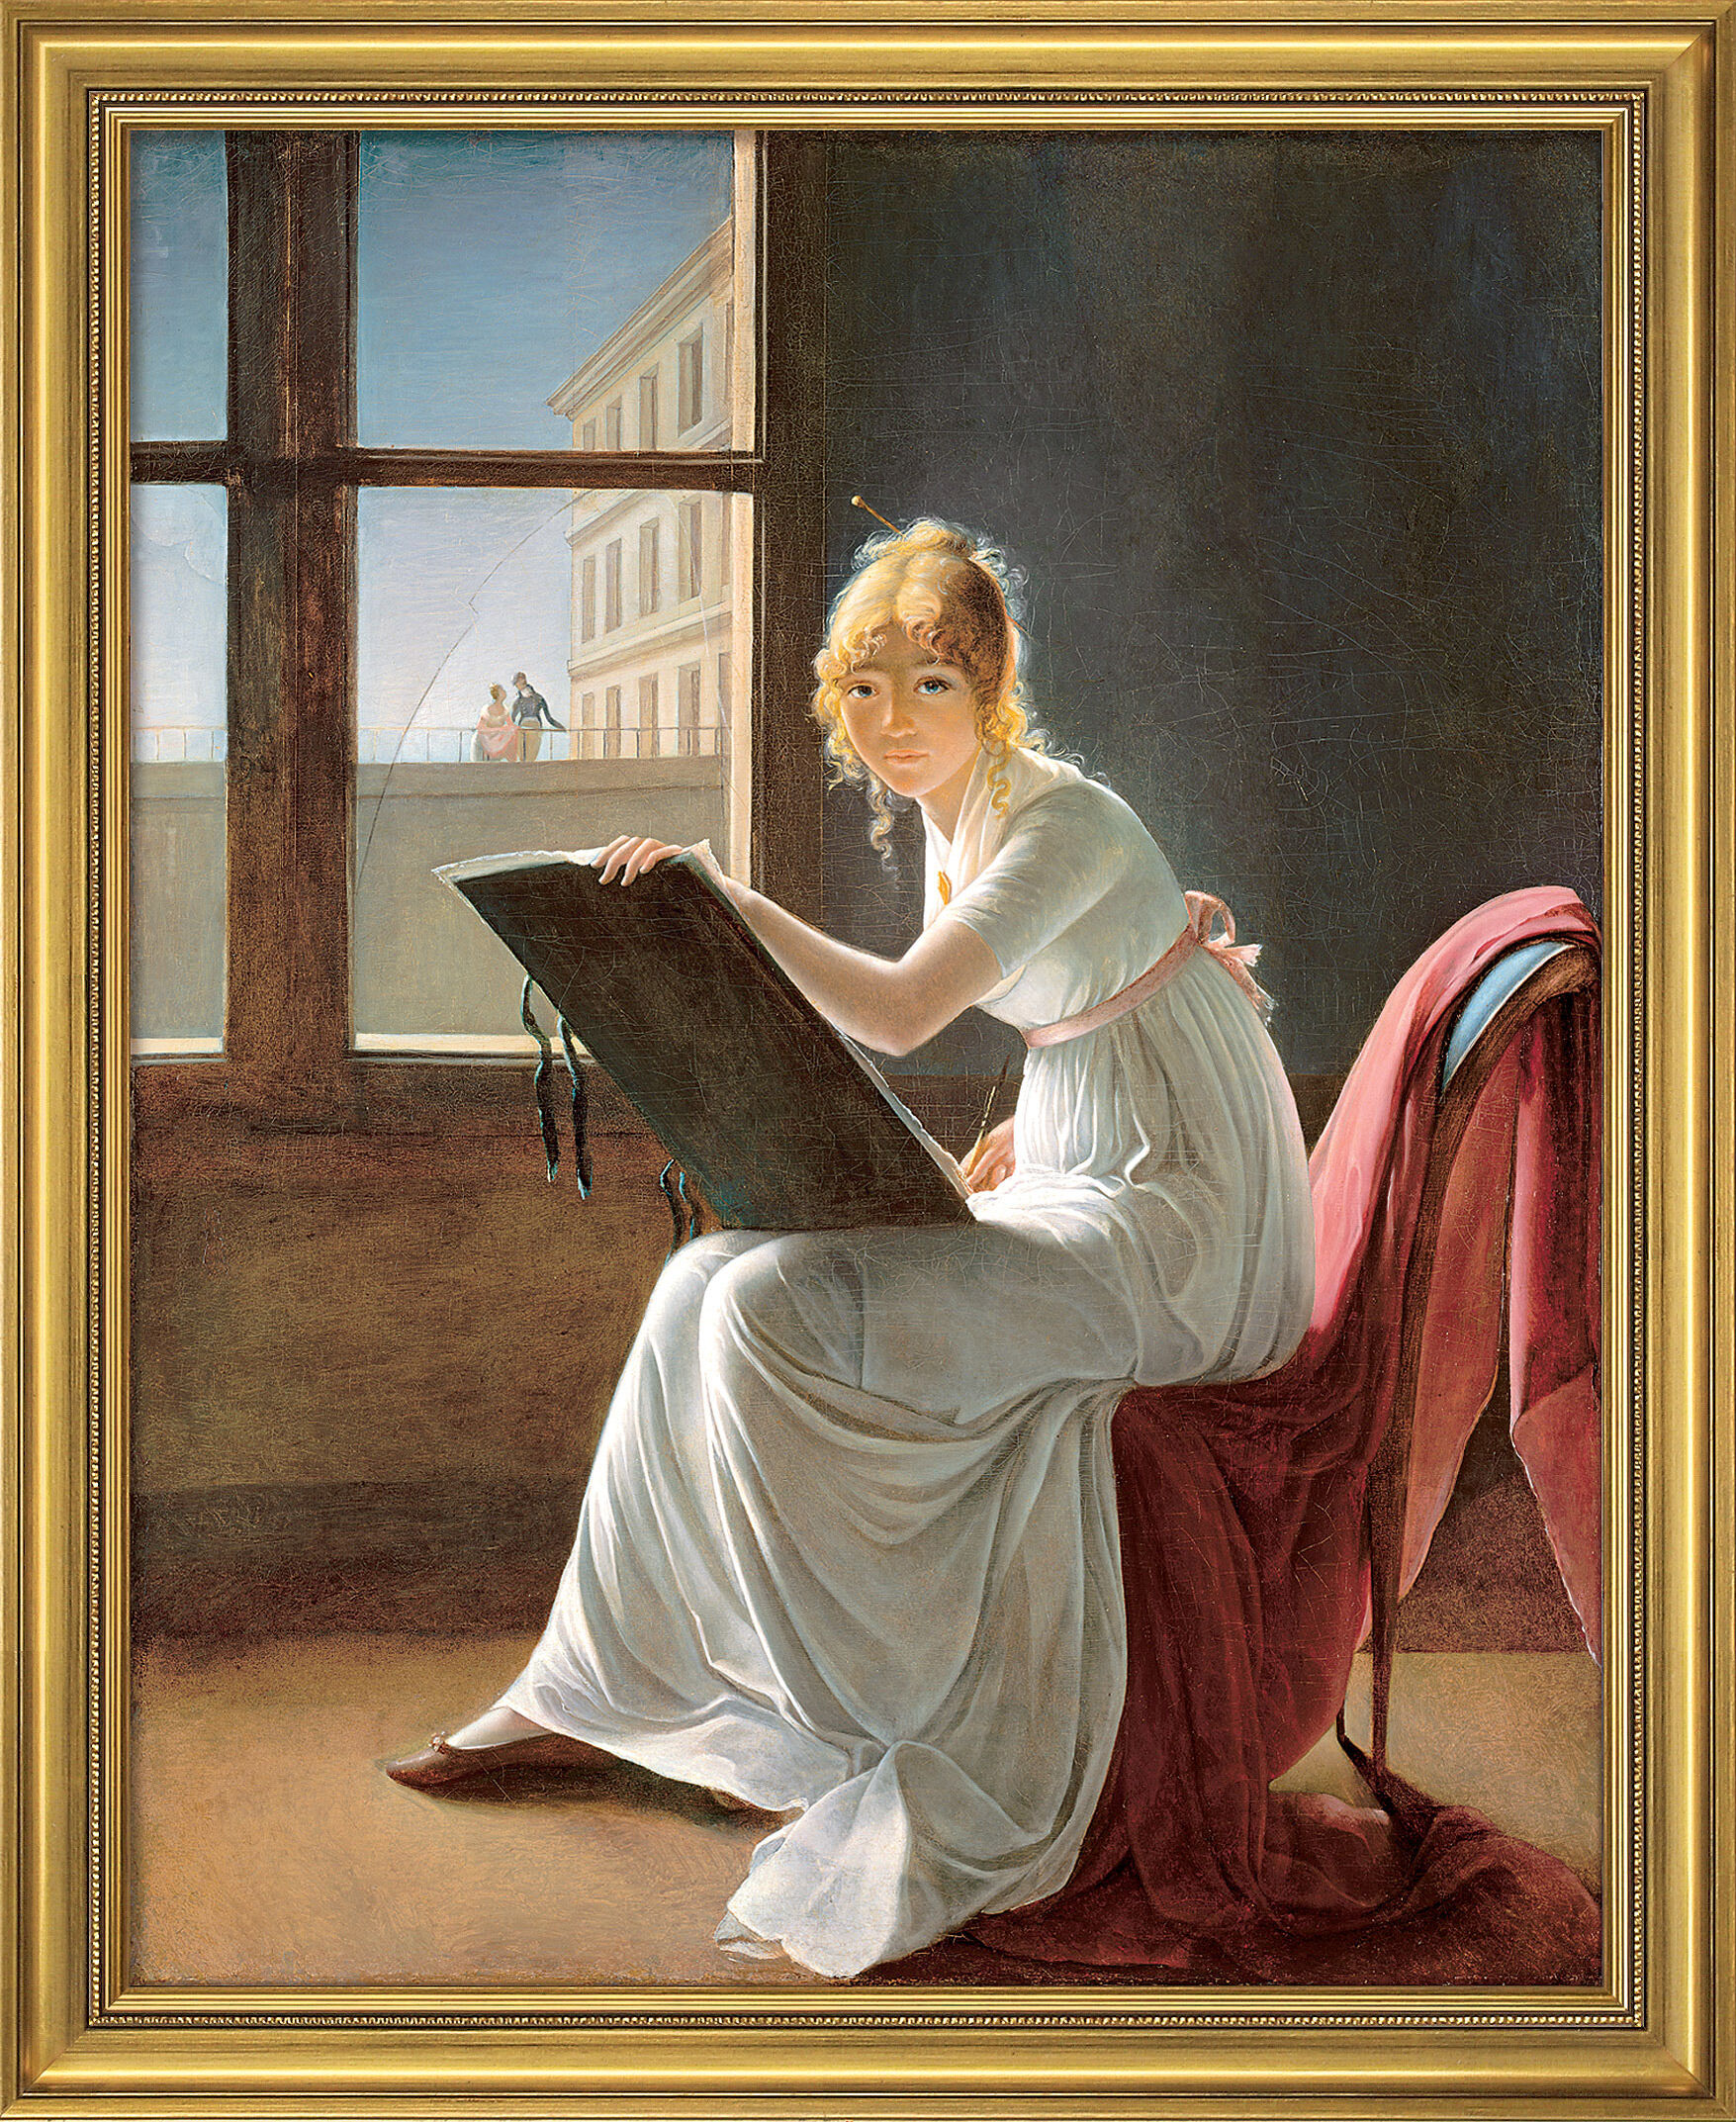 Billede "Tegning af ung kvinde" (1801), indrammet von Marie-Denise Villers